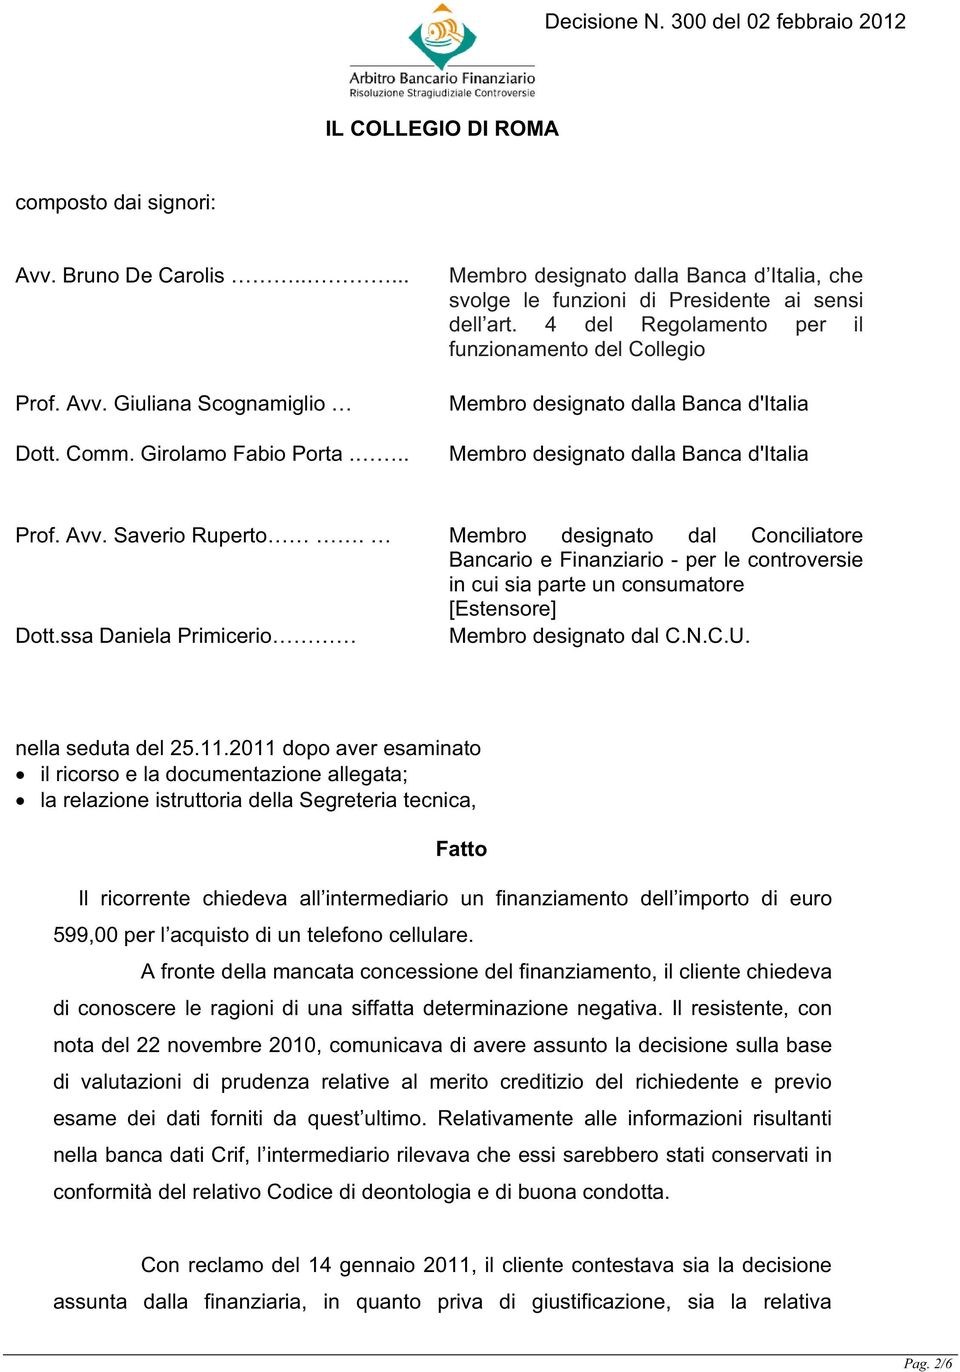 4 del Regolamento per il funzionamento del Collegio Membro designato dalla Banca d'italia Membro designato dalla Banca d'italia Prof. Avv. Saverio Ruperto.